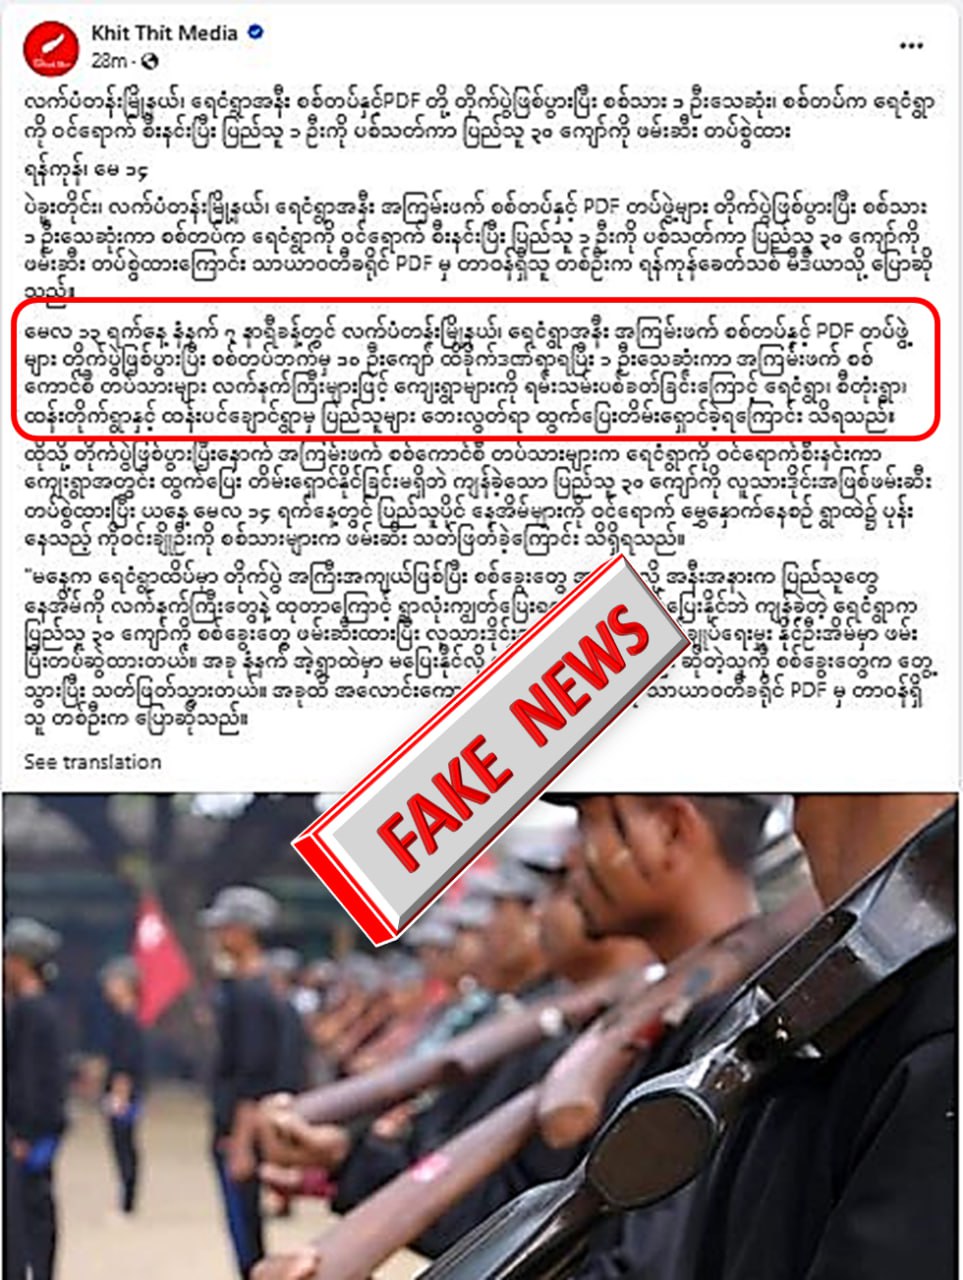 ပြည်သူ ၃၀ ကျော်ကို တပ်က ဖမ်းဆီးသွားတယ်လို့ Khit Thit Media မှ လုပ်ကြံရေးသား